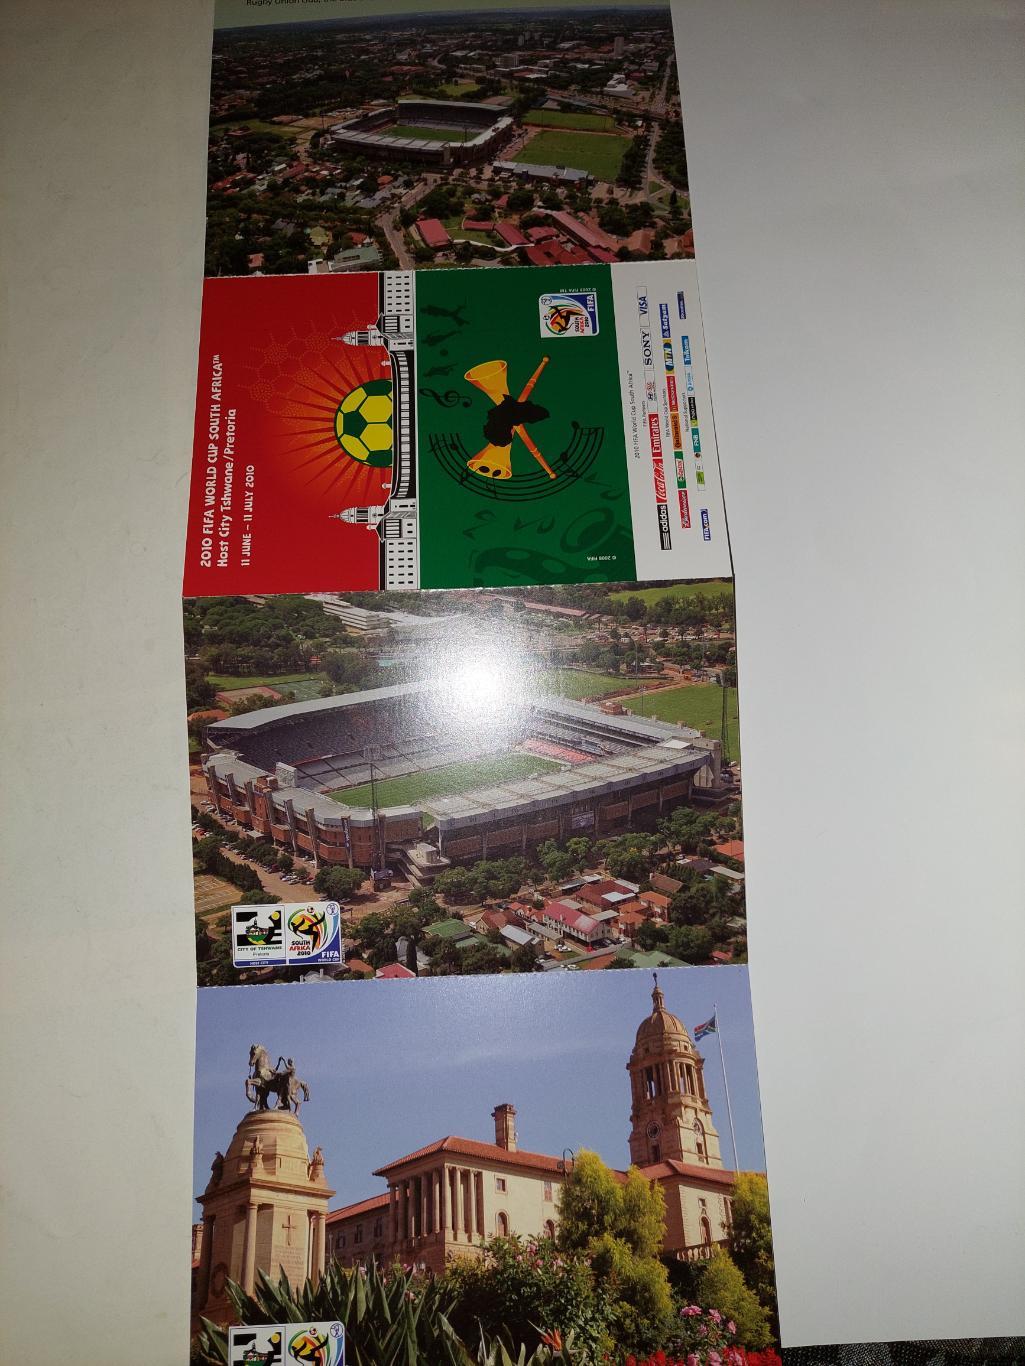 Комплект открыток раскладушка к ЧМ2010